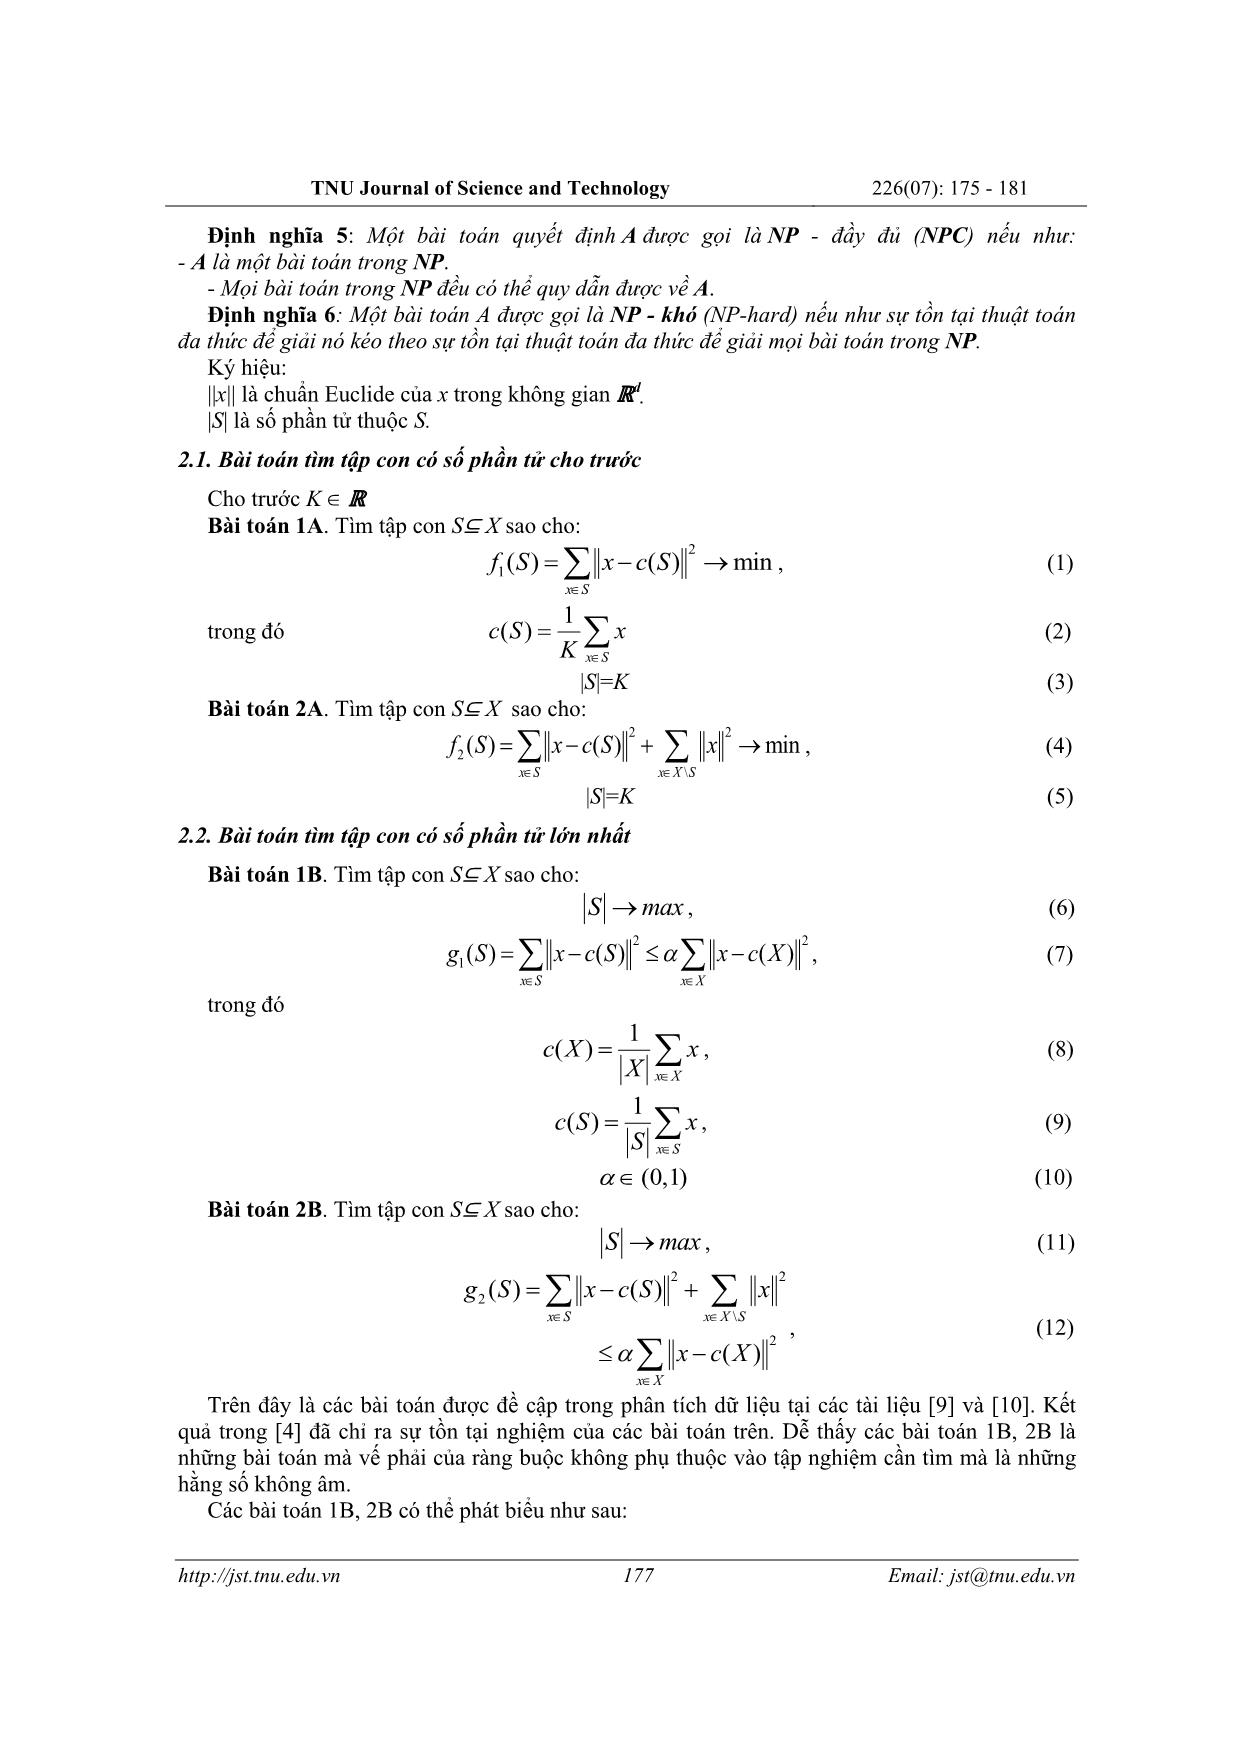 Thuật toán xấp xỉ và ứng dụng tìm nghiệm bài toán thuộc lớp NP - Khó trang 3